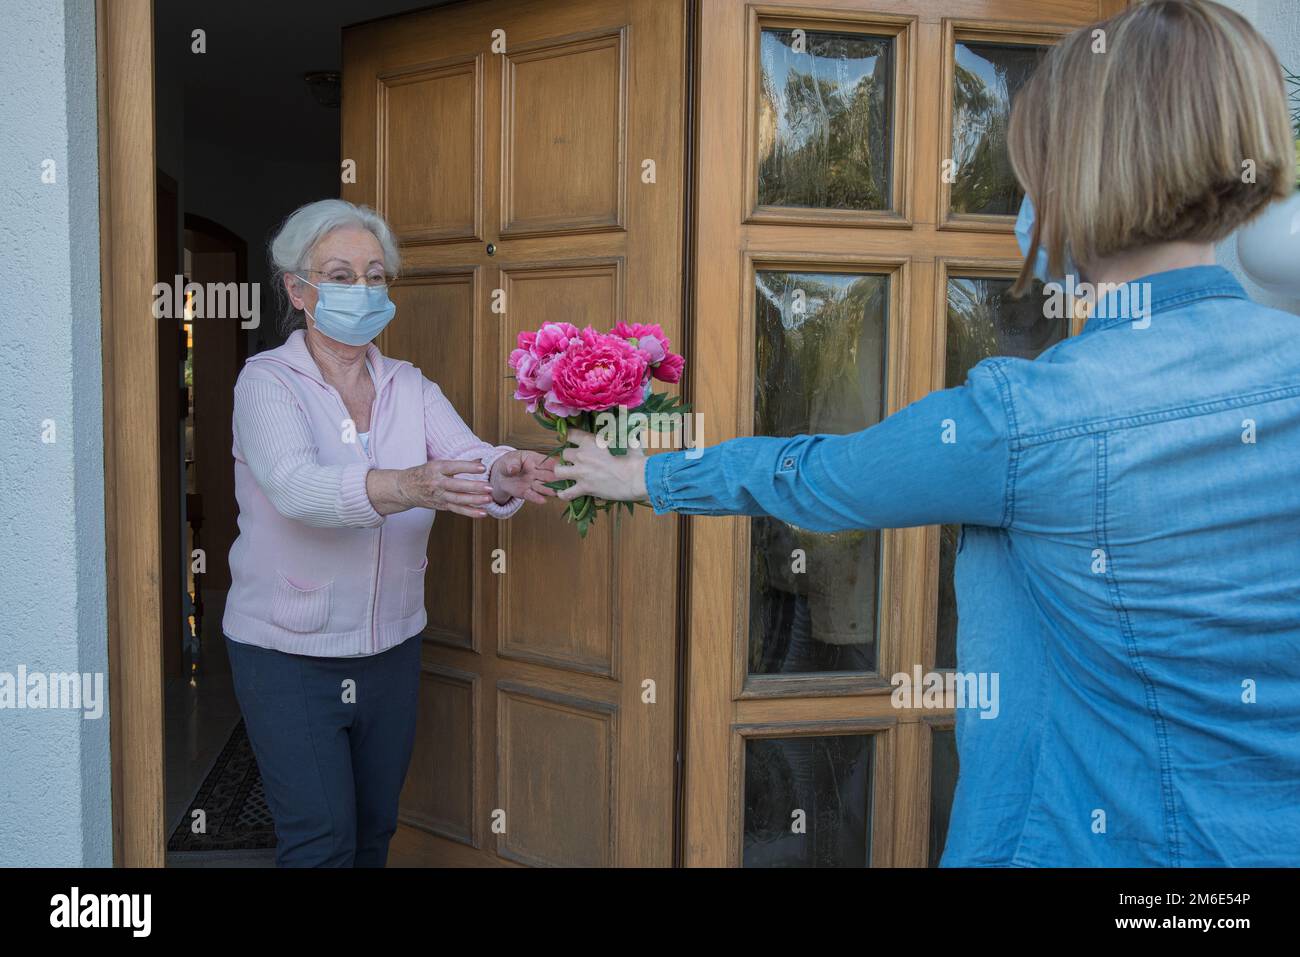 La femme âgée avec masque facial reçoit des fleurs à la porte de la maison de la femme voisine Banque D'Images